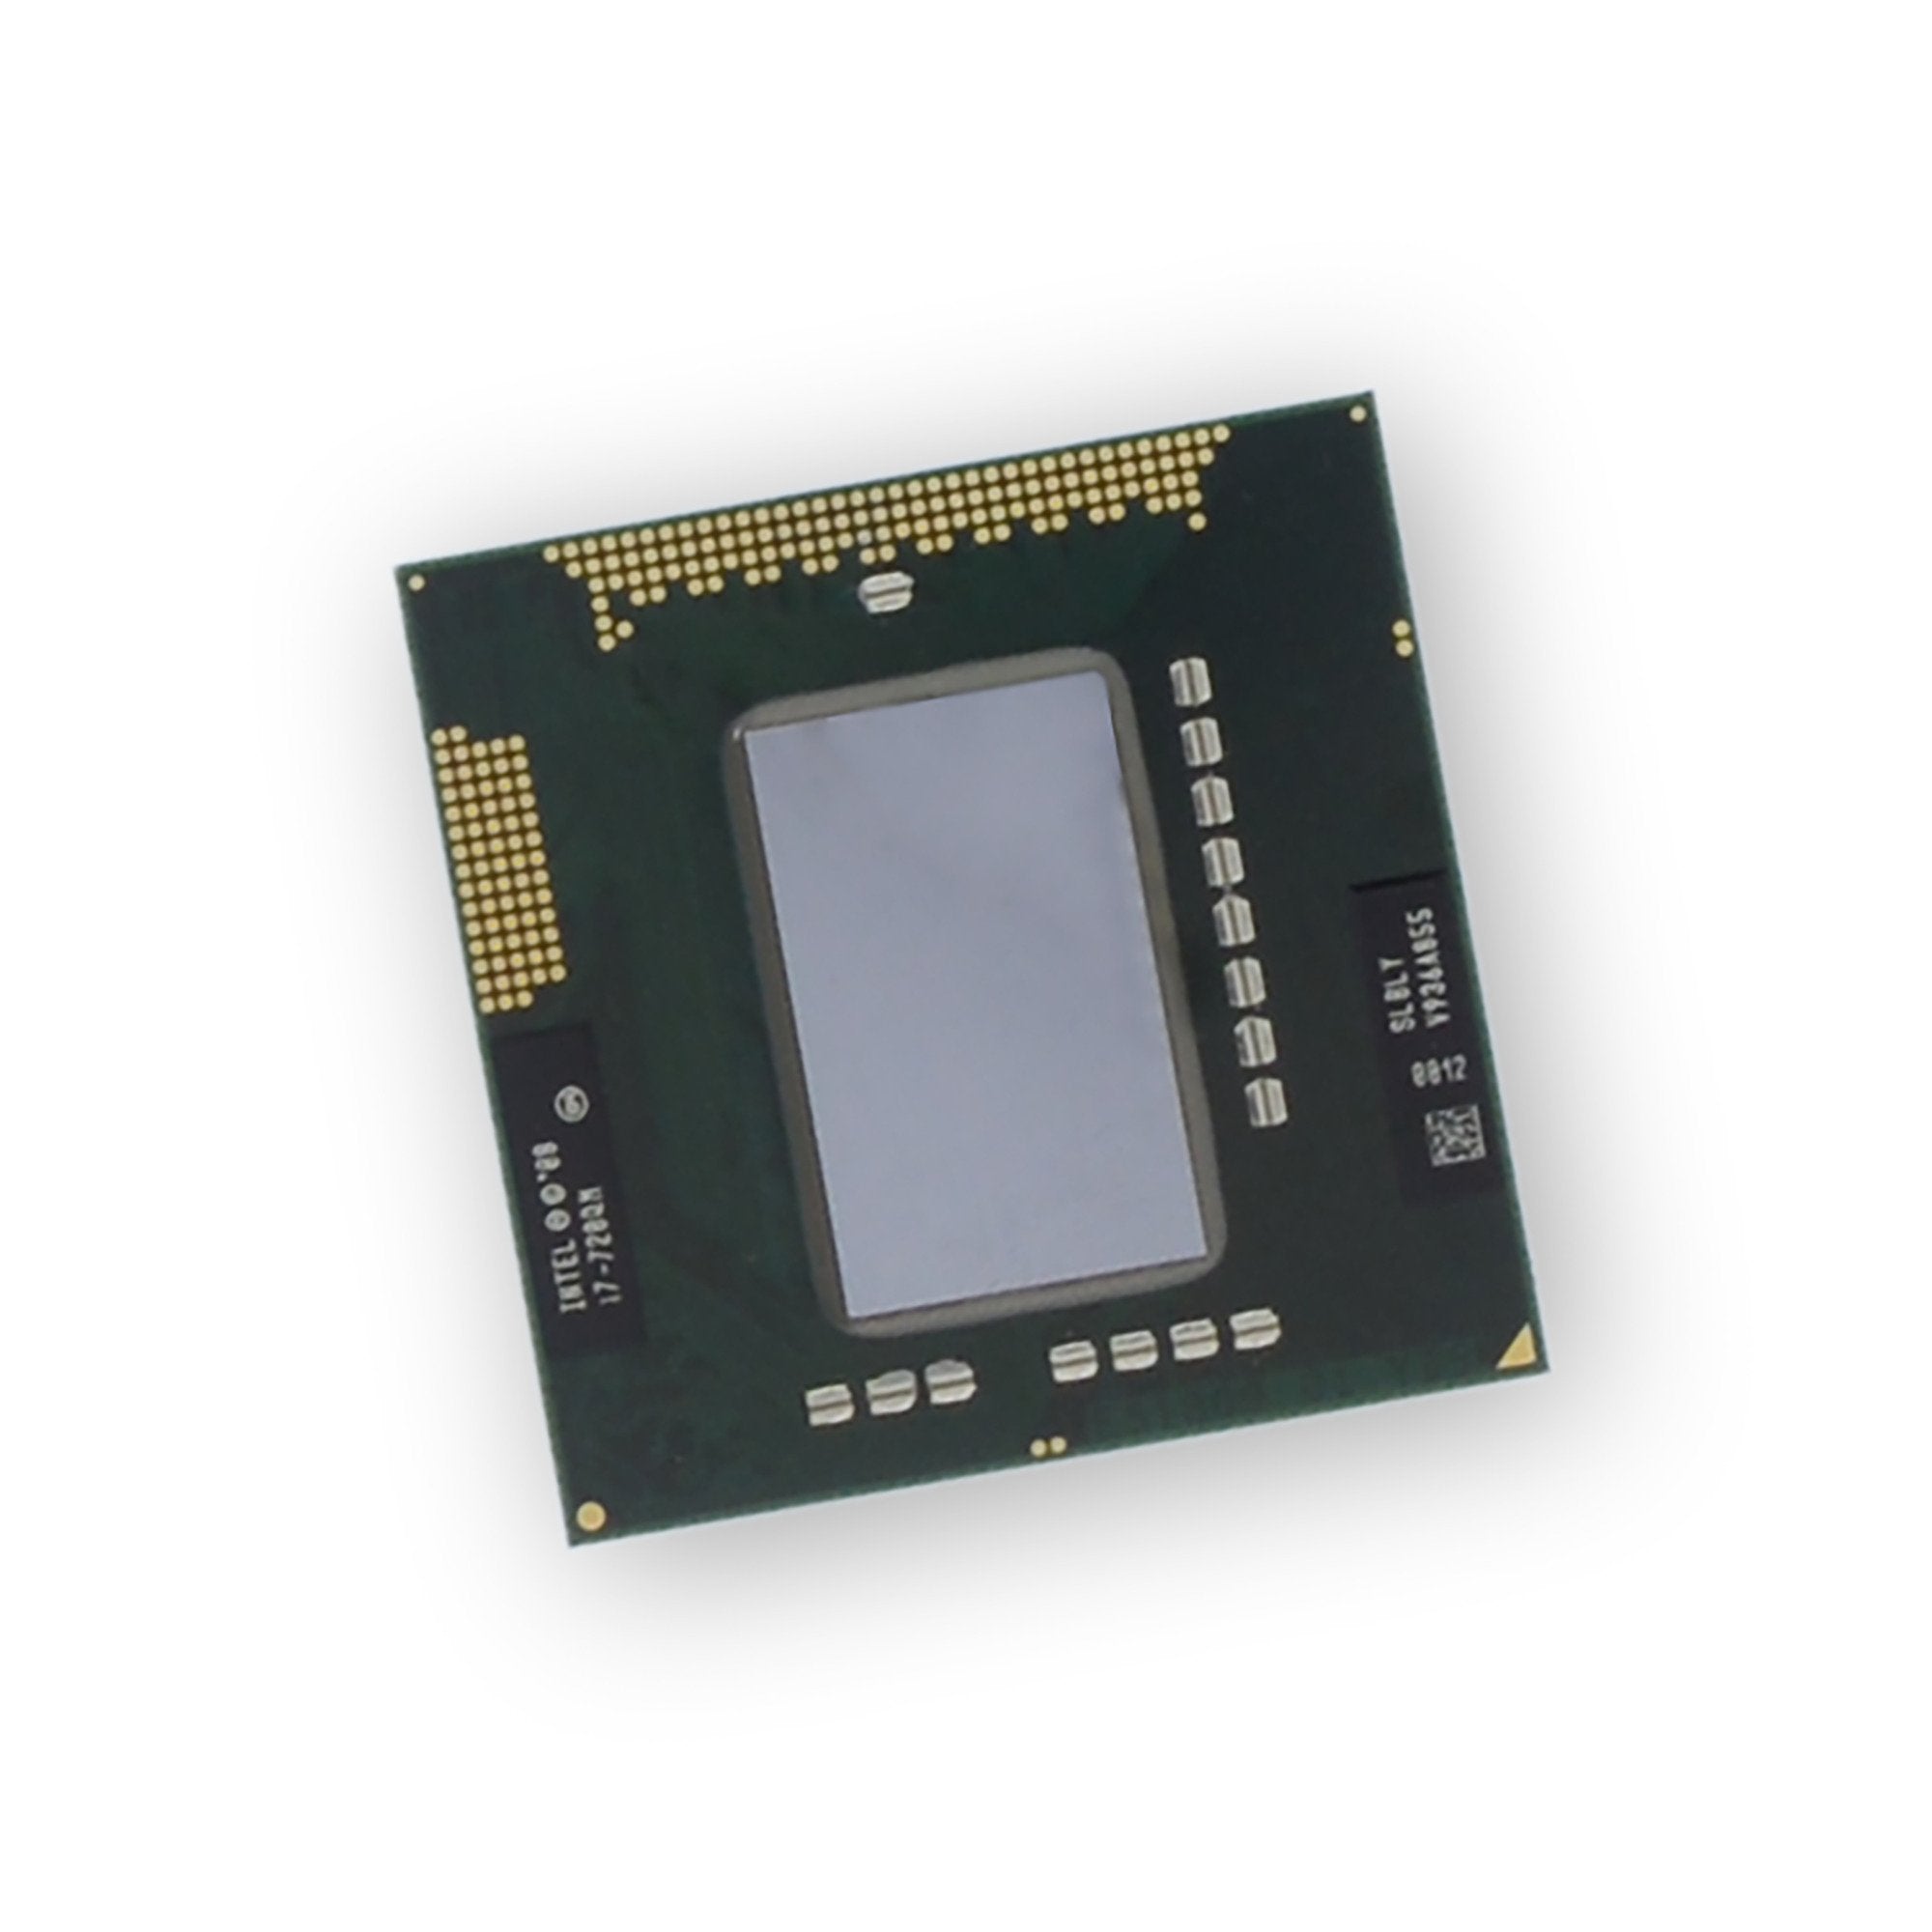 Alienware M15x (P08G) i7-720QM CPU